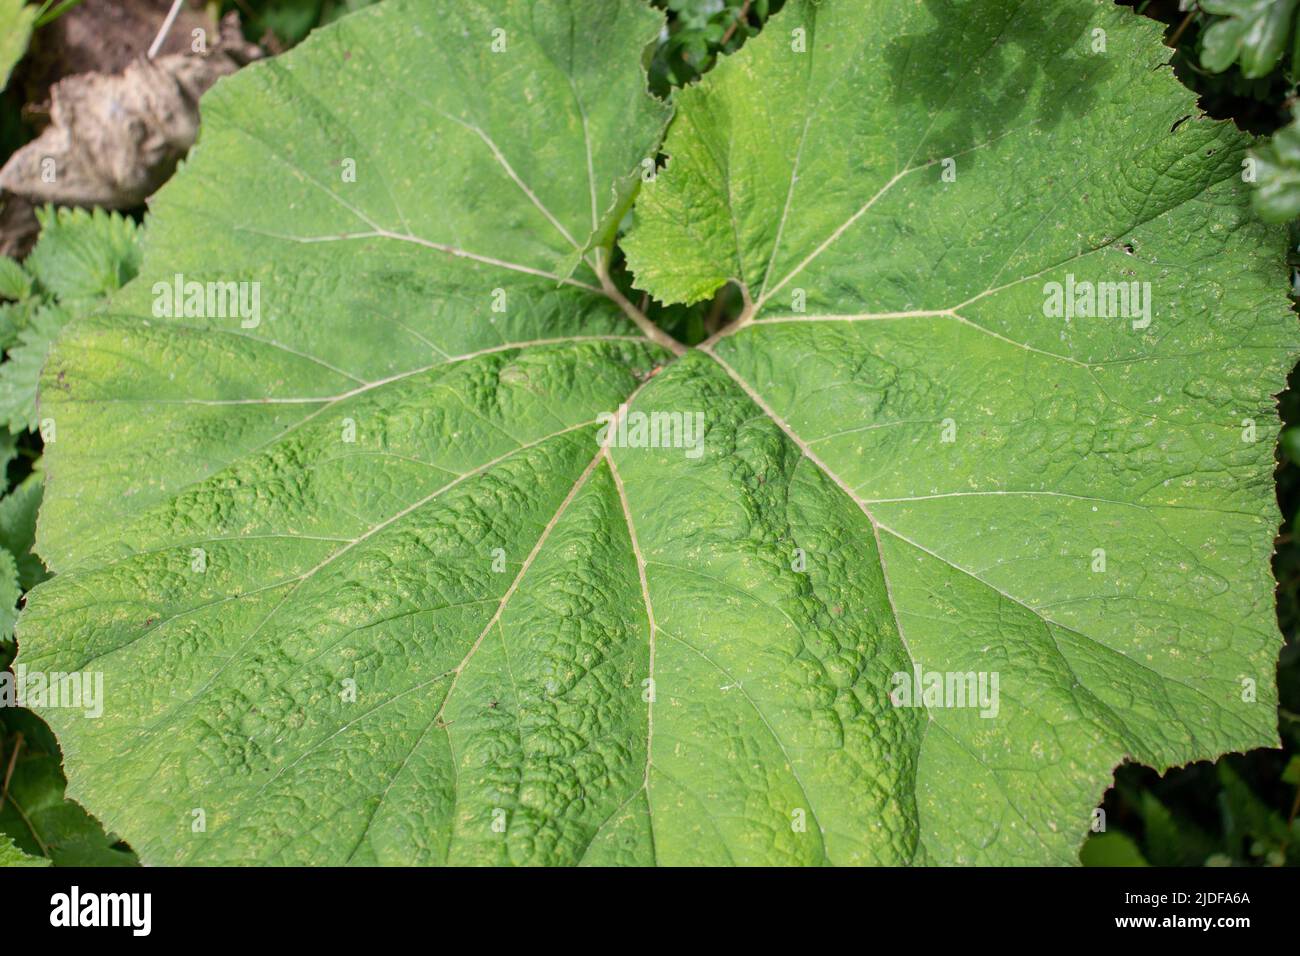 Nahaufnahme eines einzelnen Blattes wilder Rhabarber oder Butterbur (Petasites vulgaris) auf einem natürlichen grünen Heckenhintergrund Stockfoto